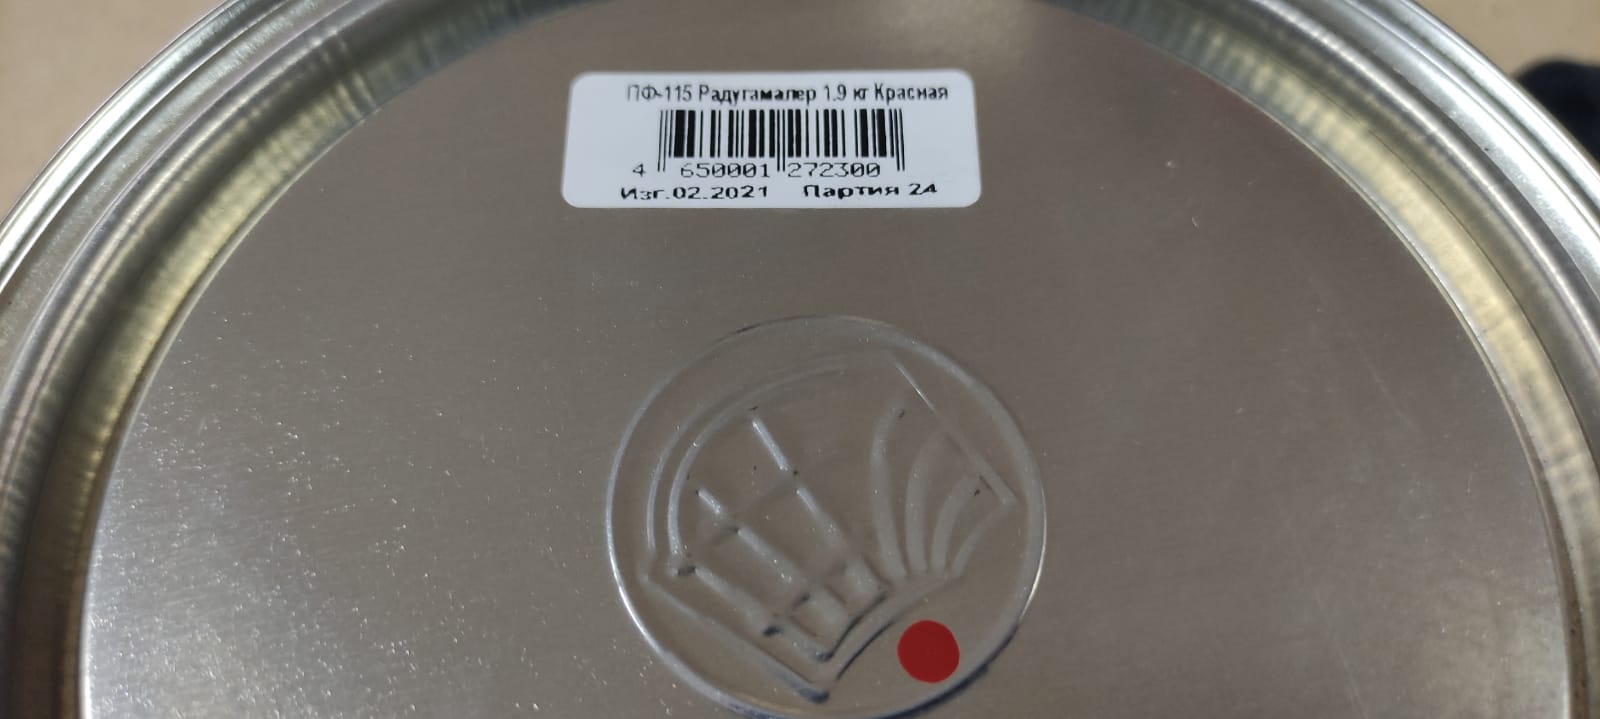 Эмаль ПФ 115 универсальная РадугаМалер 1,9 кг (красная)